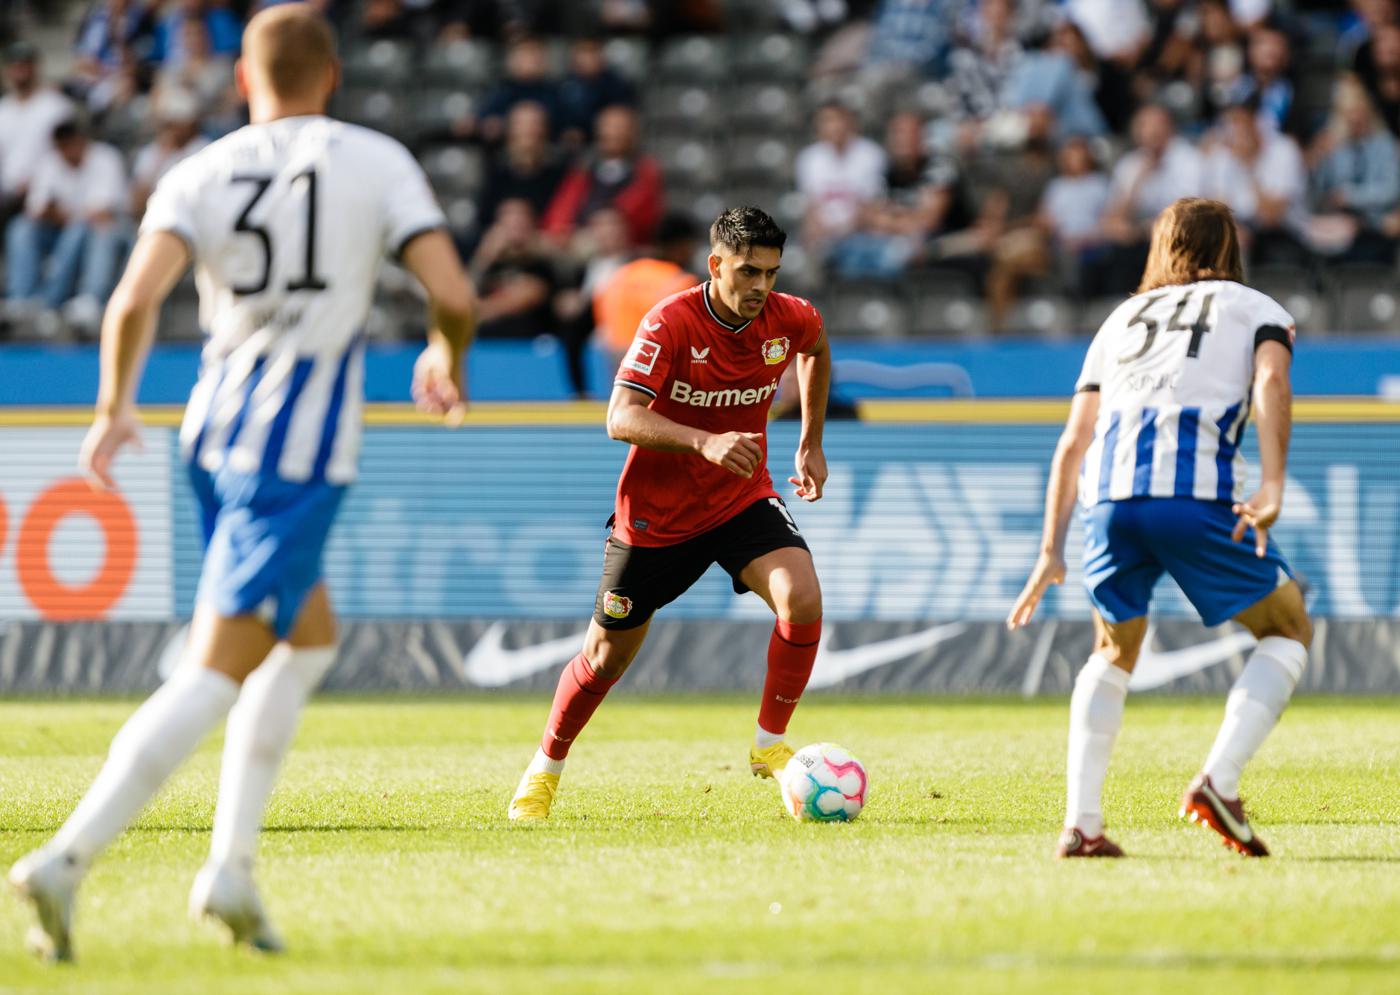 Bayer gegen Hertha - 4:1. Deutsche Meisterschaft, 23. Runde. Spielbericht, Statistik.